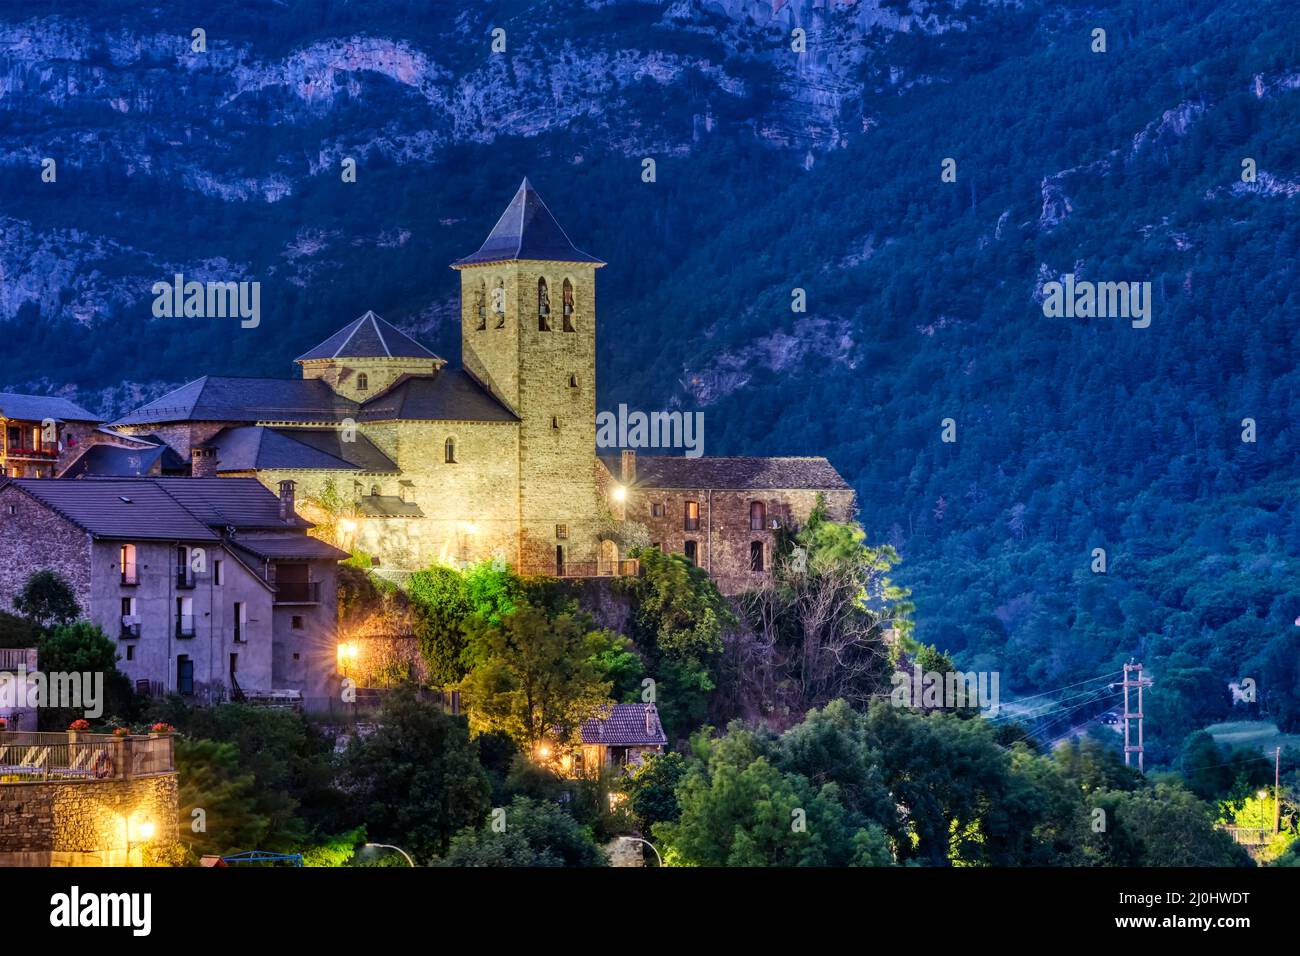 L'église de Torla dans les Pyrénées espagnoles de nuit Banque D'Images